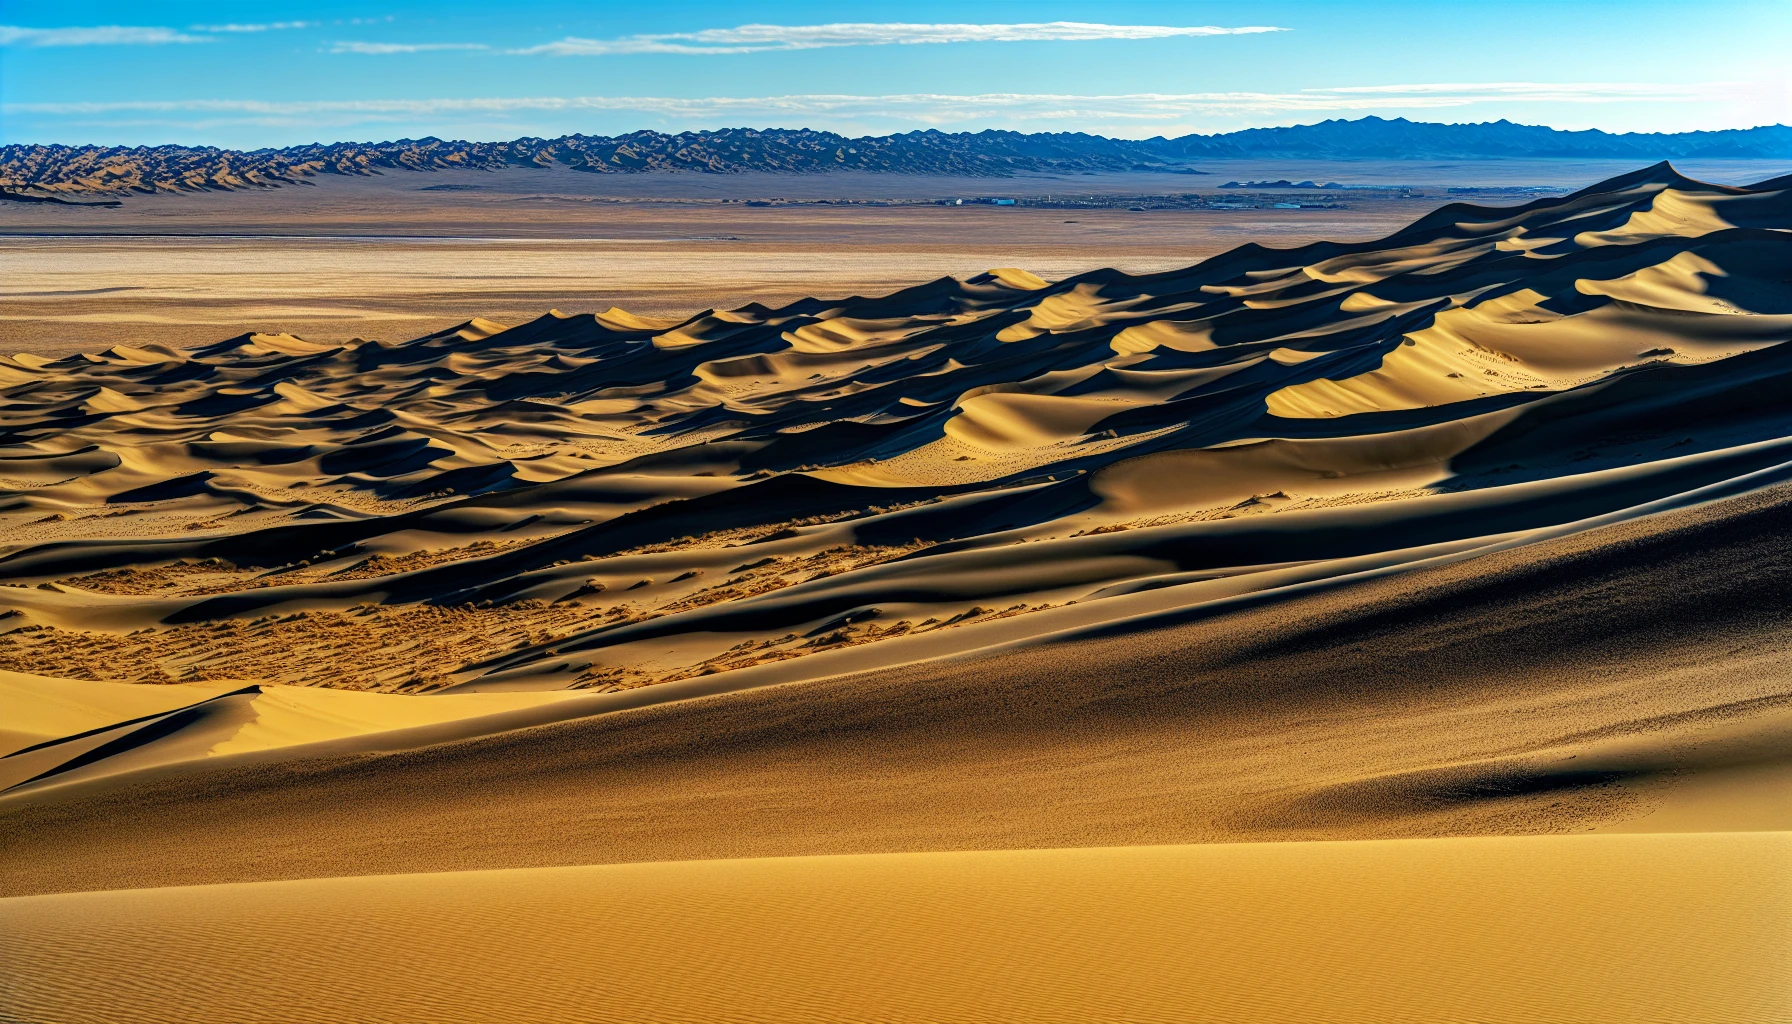 Breathtaking view of the Gobi Desert in Mongolia